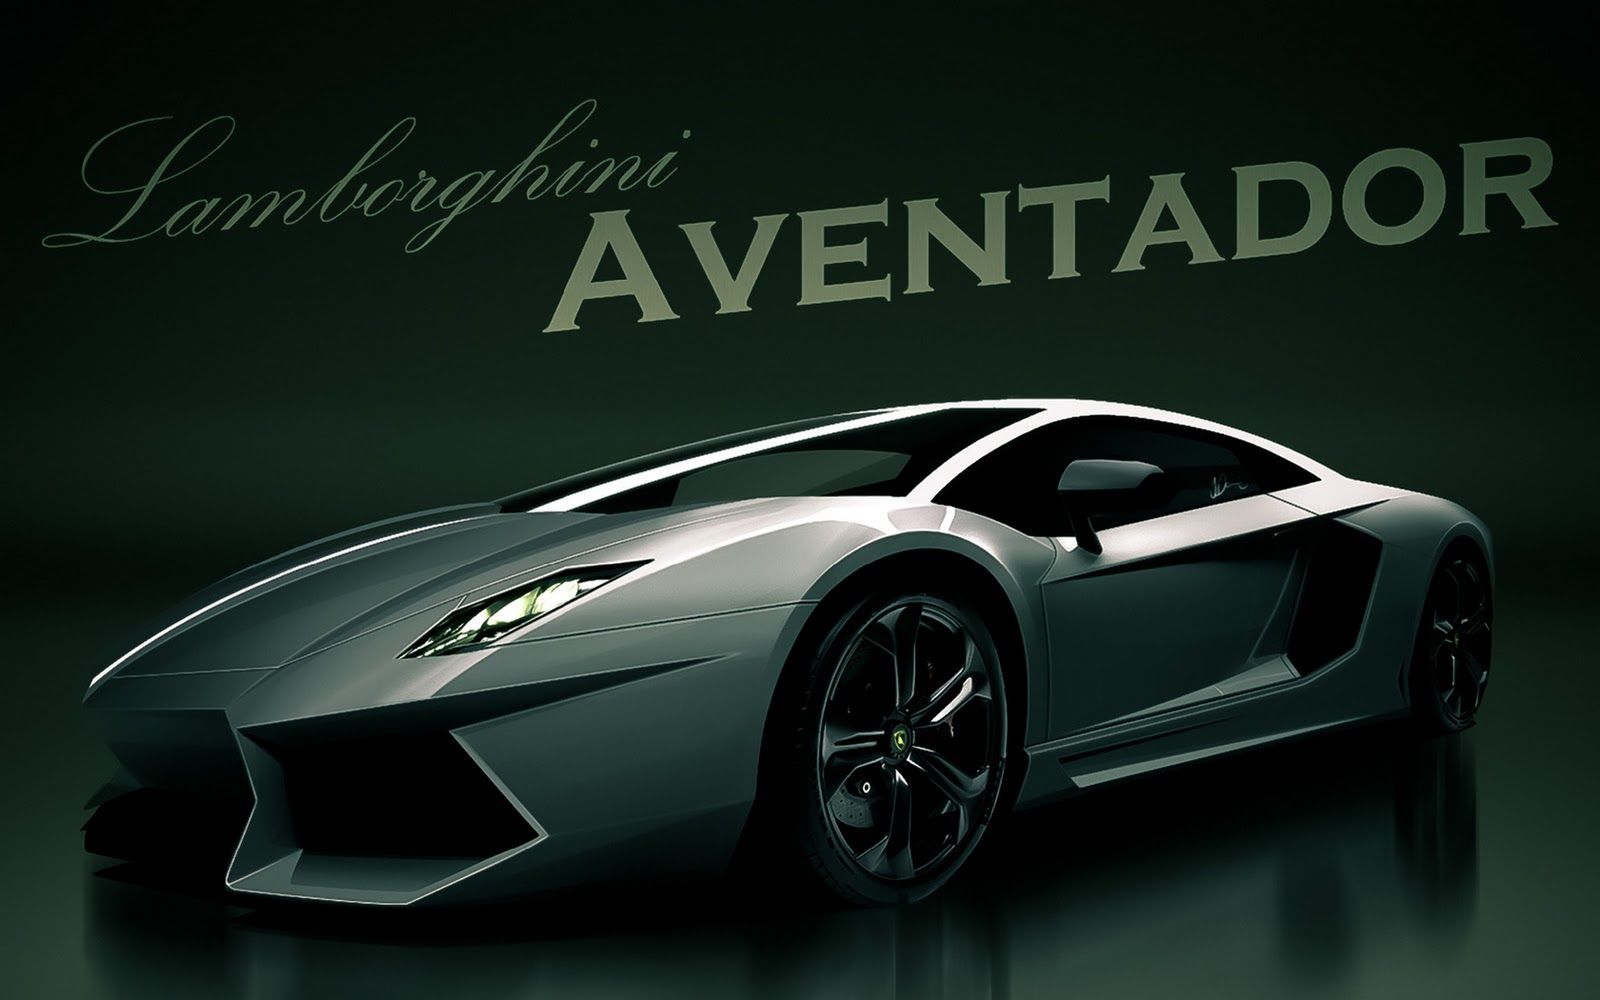 HD Wallpapers Widescreen 1080P 3D Lamborghini Aventador 1600x1000